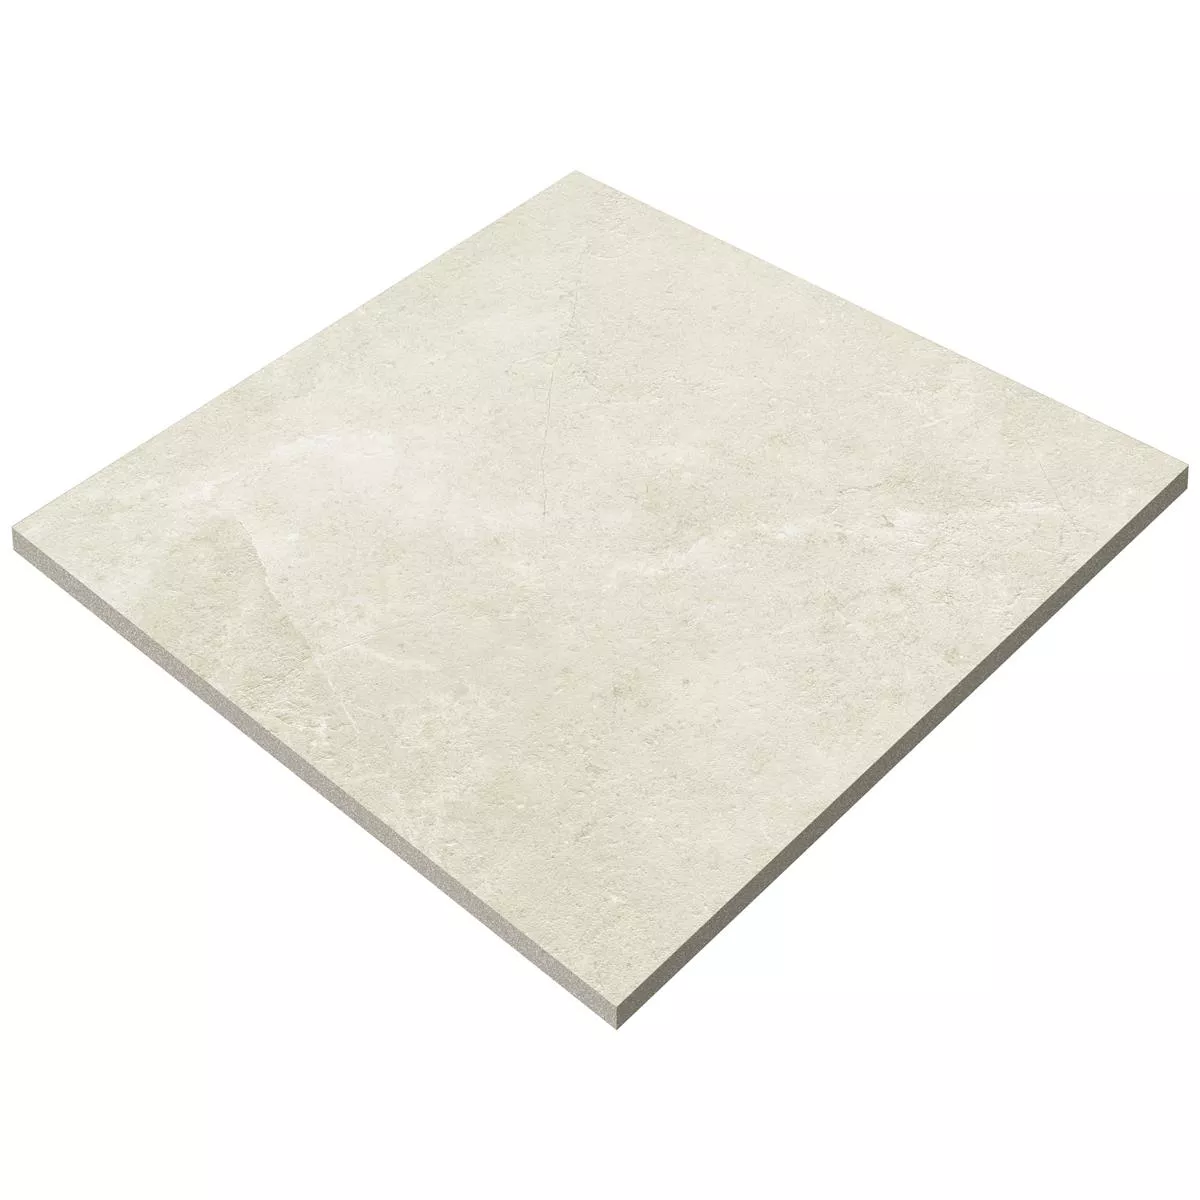 Floor Tiles Bangui Stone Optic 60x60cm Ivory